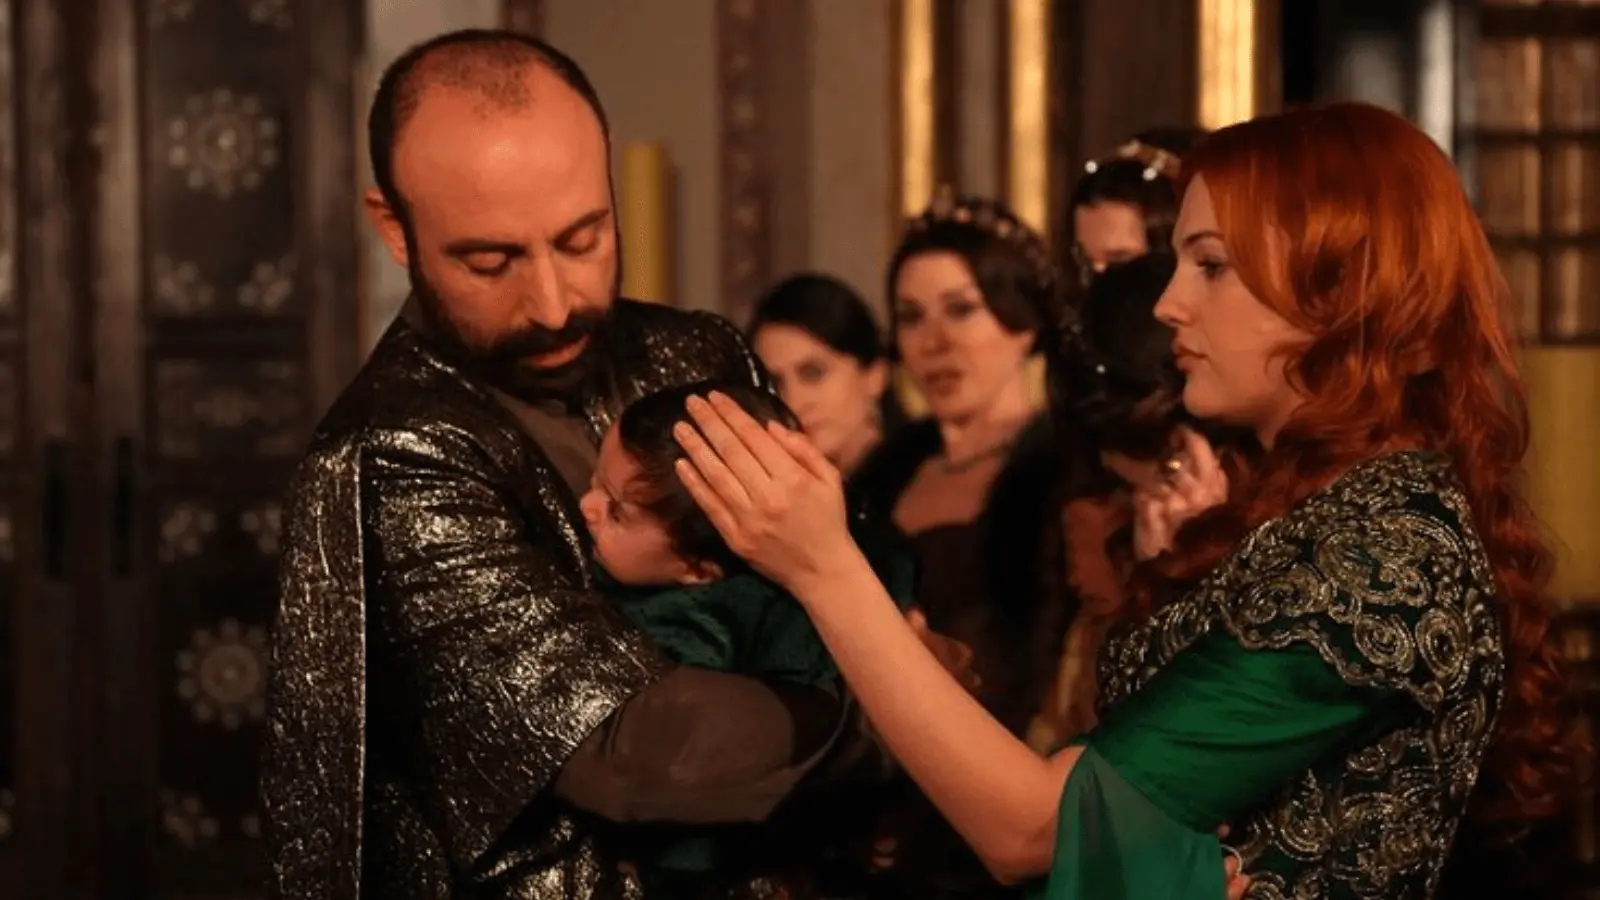 De asemenea, sezonul se axează pe evoluția relației dintre Suleyman și Hürrem, inclusiv momentele de bucurie și tristețe în căsnicia lor.